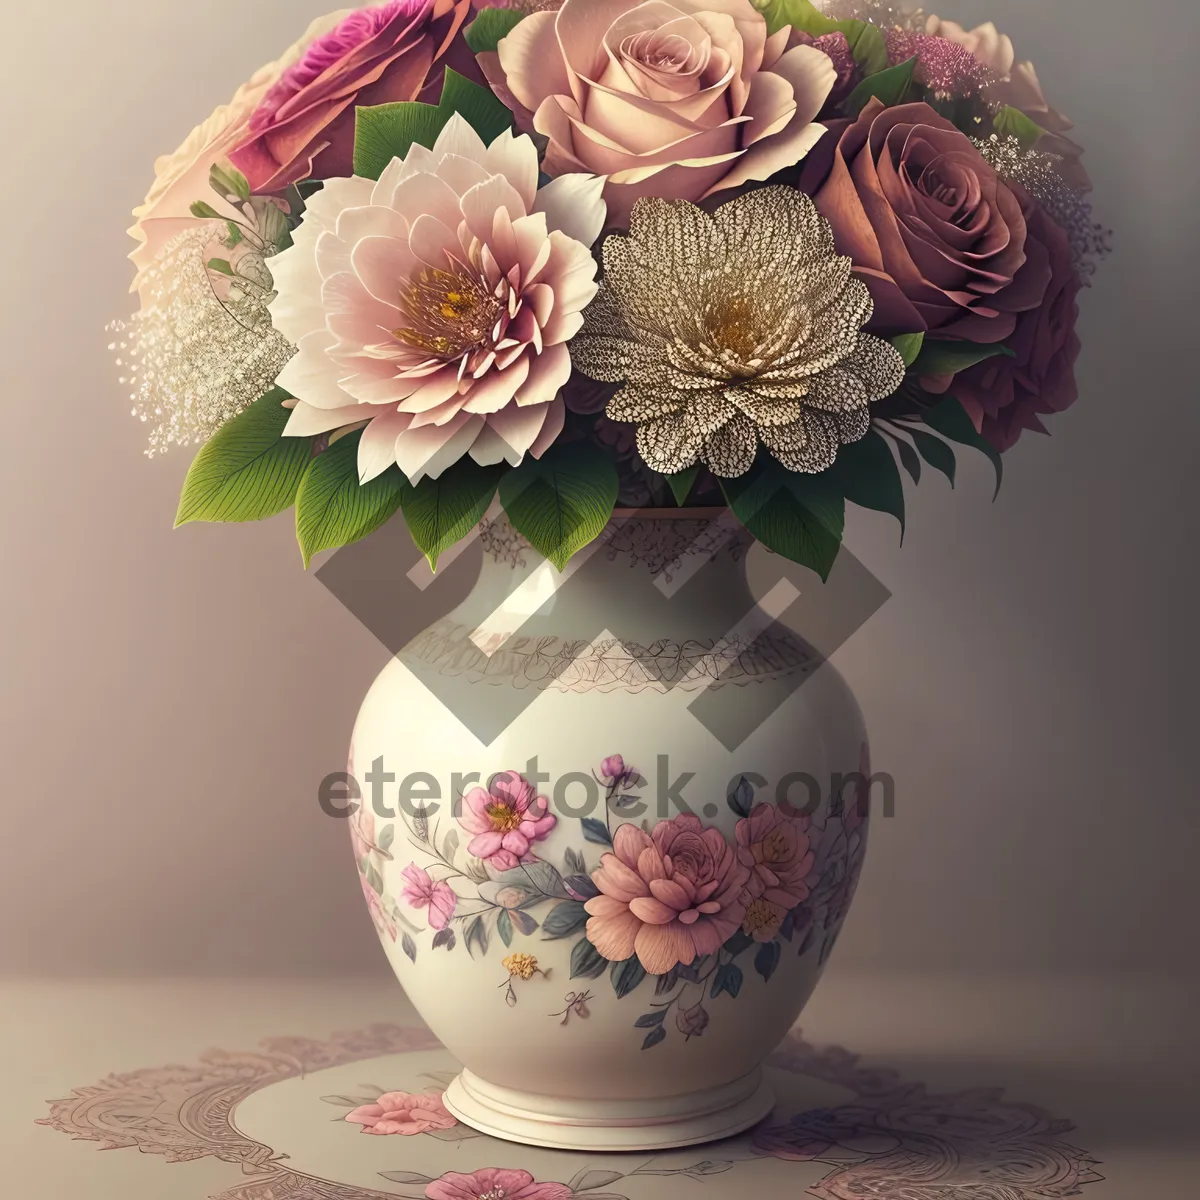 Picture of Floral Porcelain Vase: Elegant ceramic ware for displaying flowers.